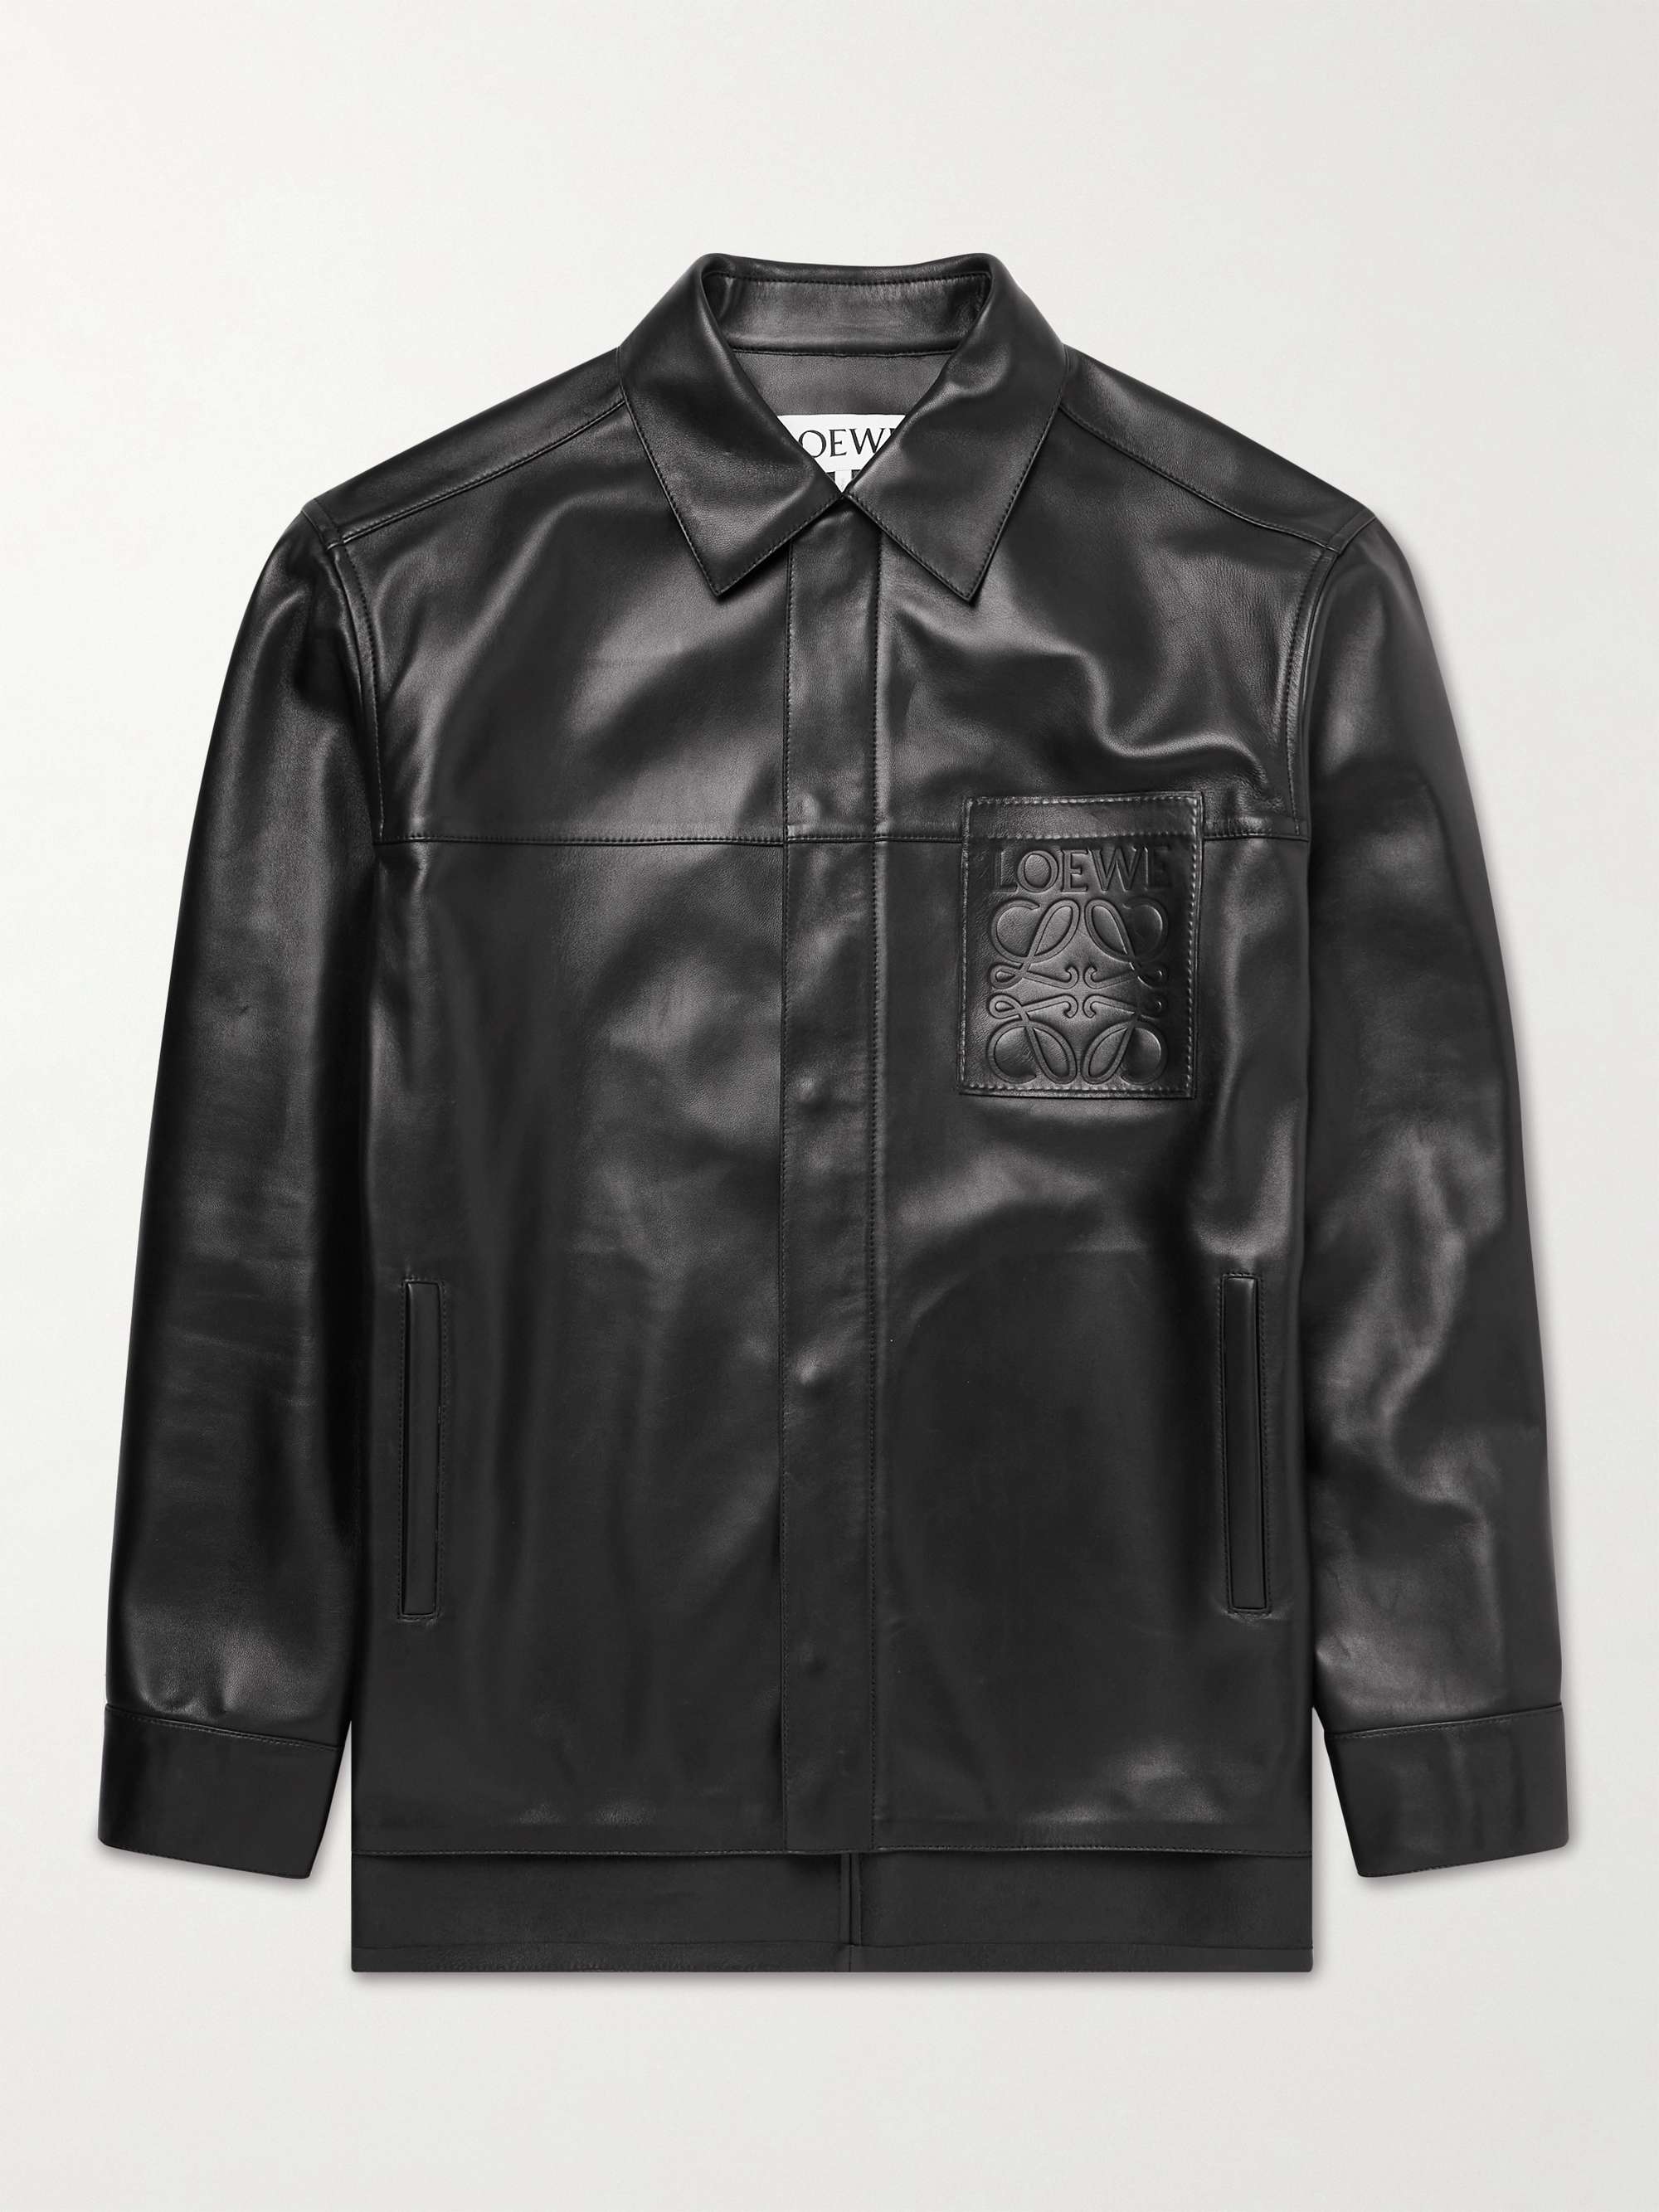 LOEWE Logo-Debossed Leather Jacket for Men